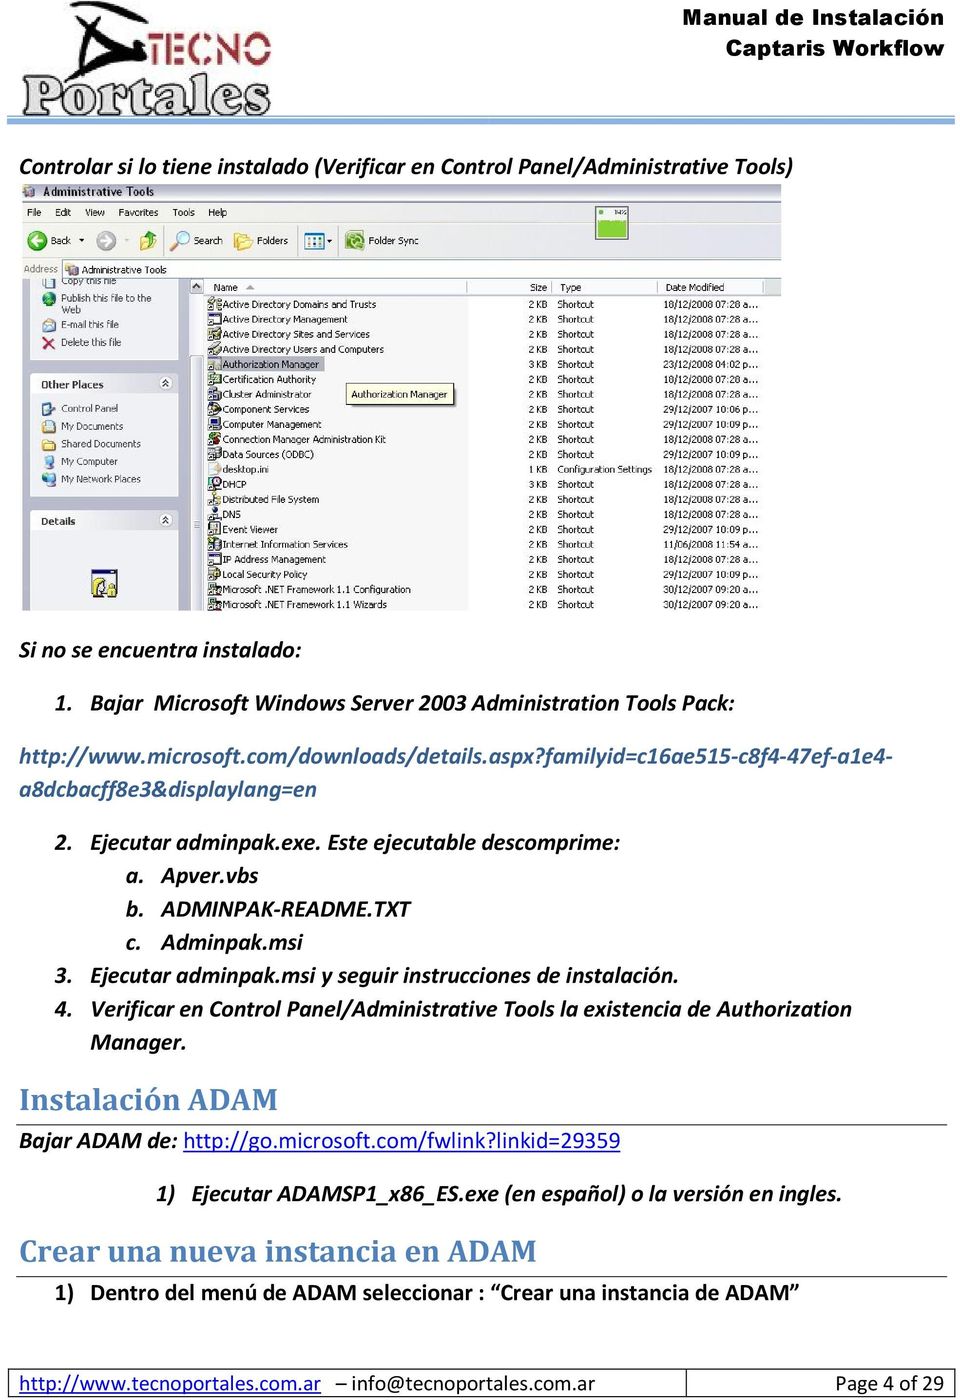 Ejecutar adminpak.msi y seguir instrucciones de instalación. 4. Verificar en Control Panel/Administrative Tools la existencia de Authorization Manager. Instalación ADAM Bajar ADAM de: http://go.